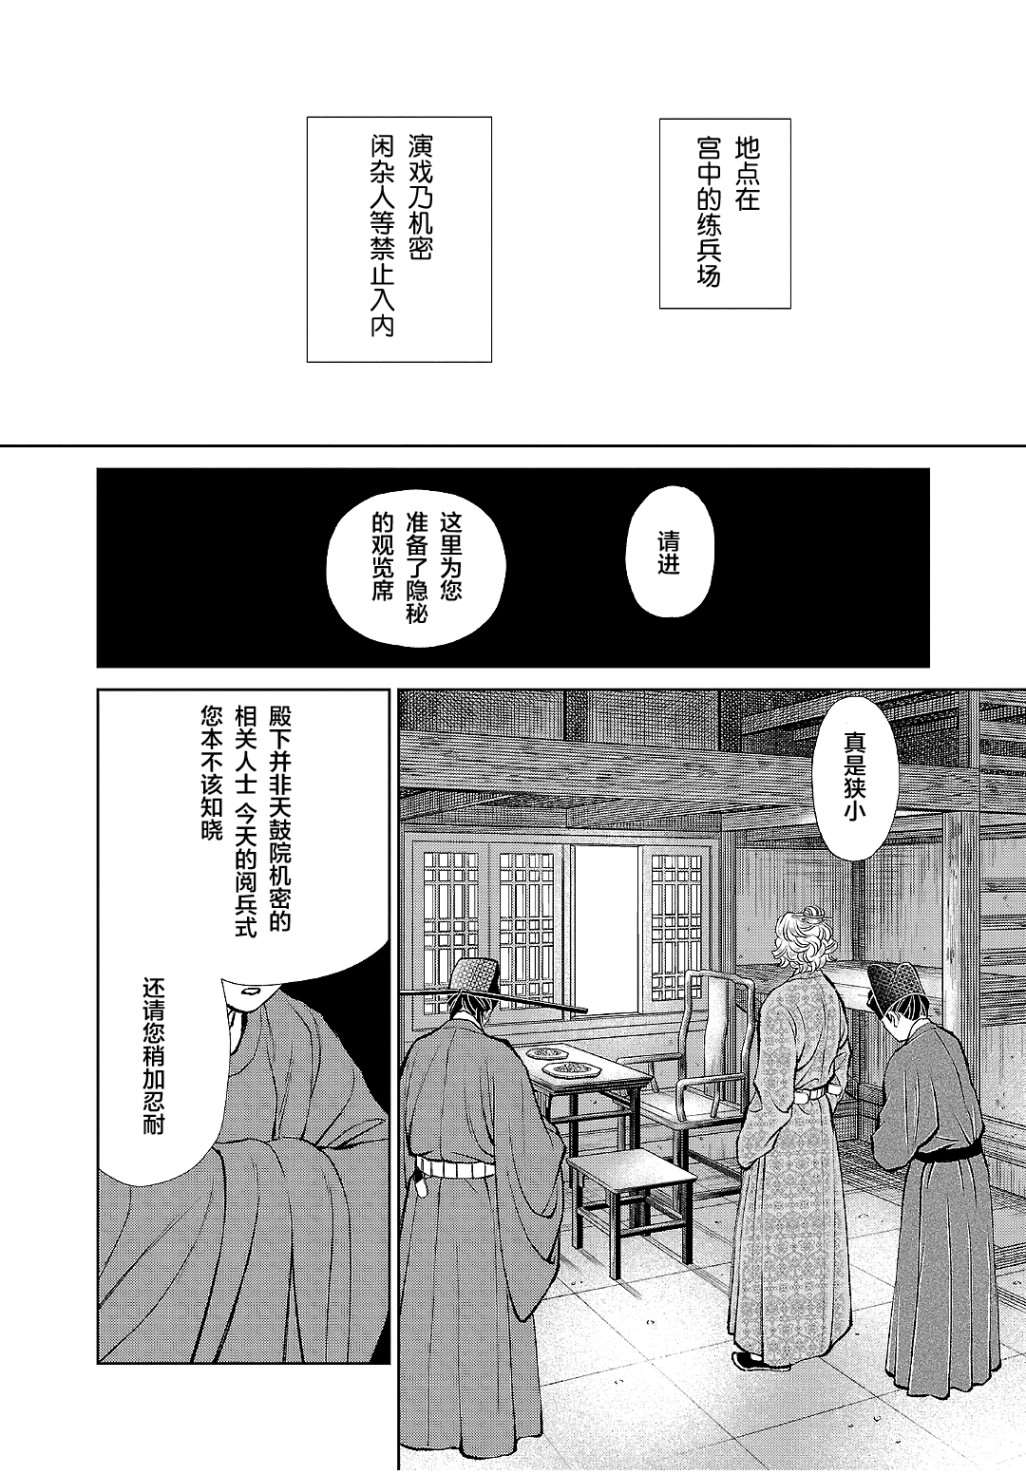 天上恋歌~金之公主与火之药师~漫画,第18话2图